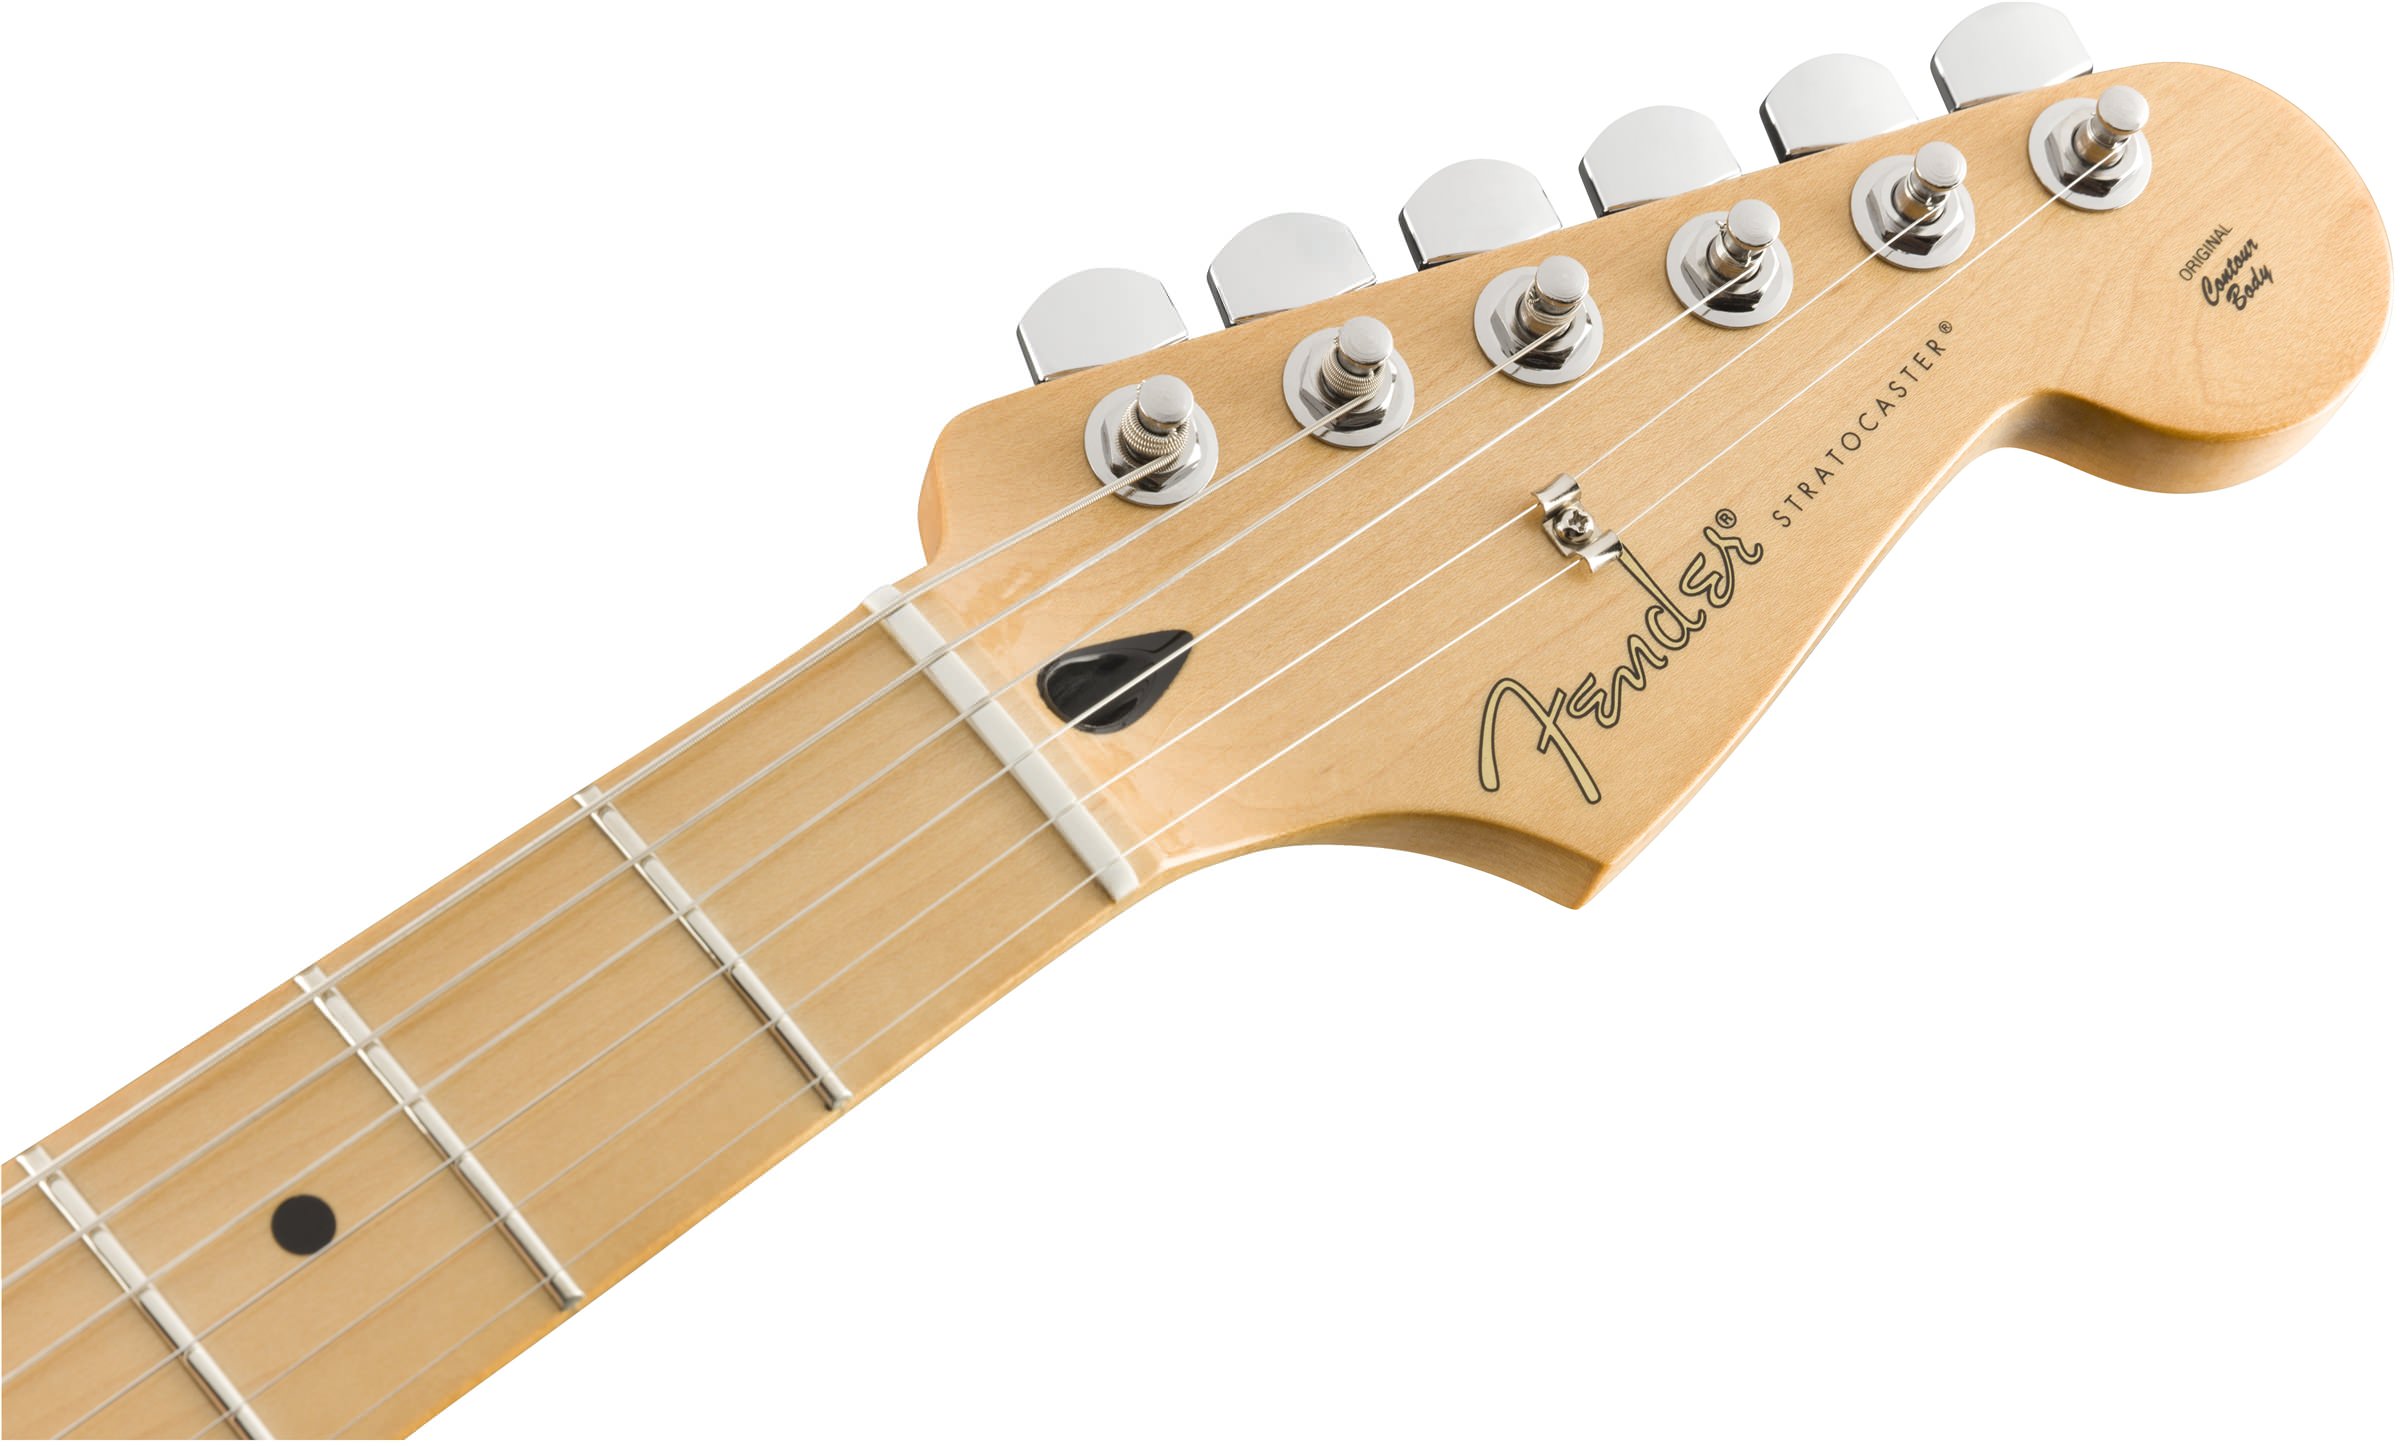 Fender Player Stratocaster HSS MN Black по цене 120 000 ₽